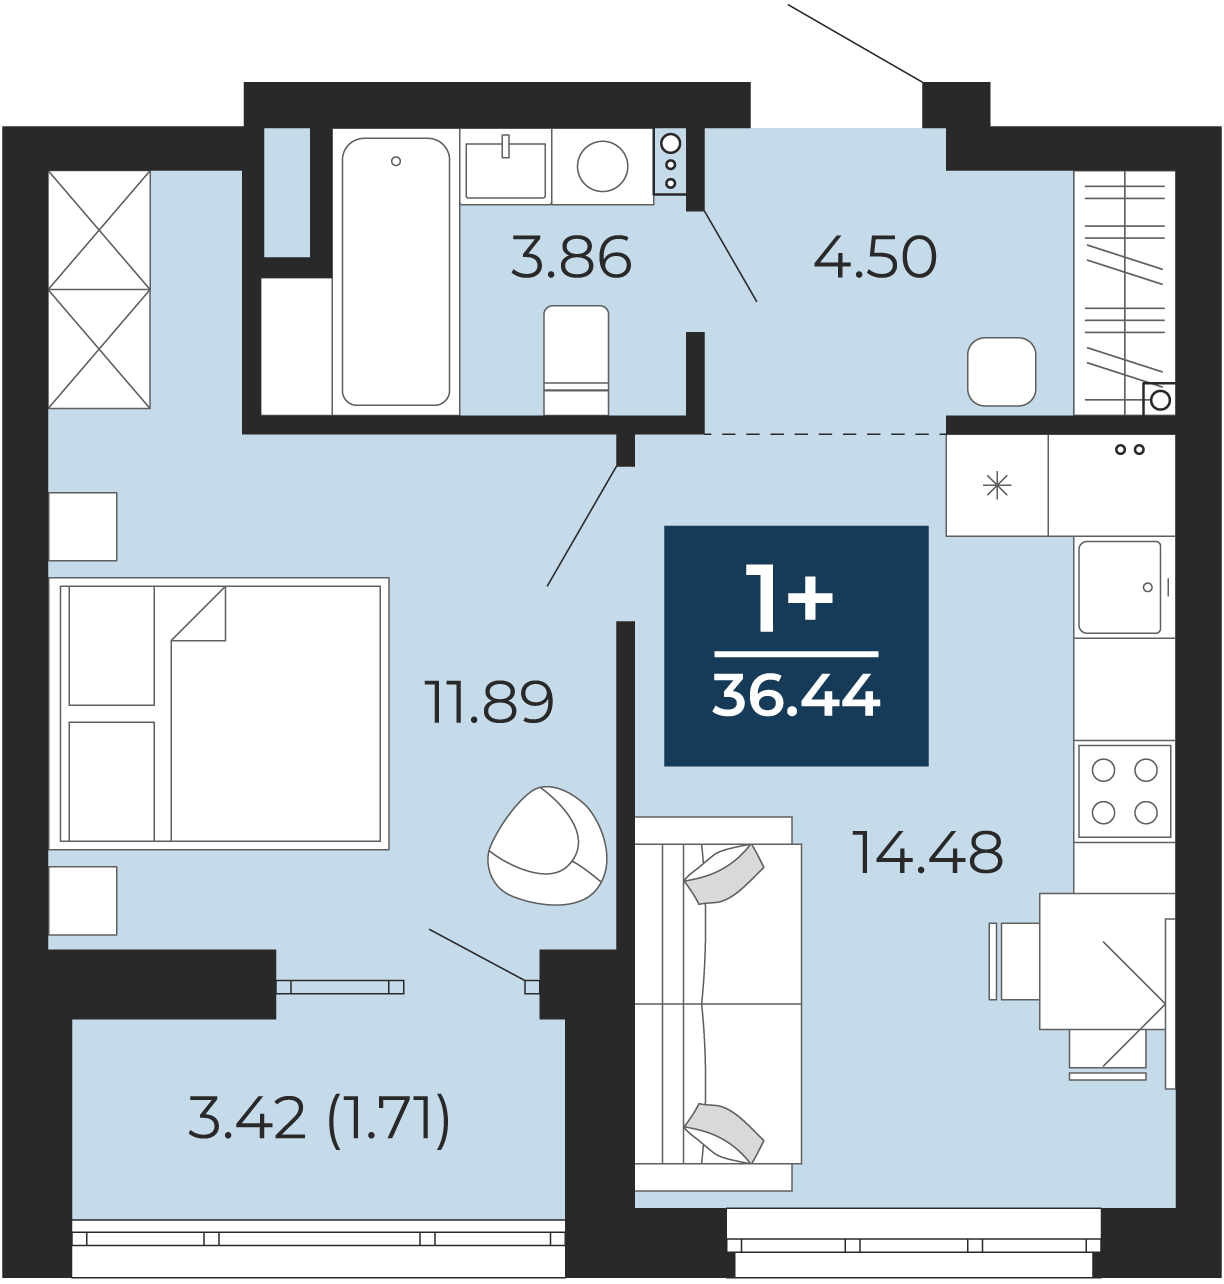 Квартира № 7, 1-комнатная, 36.44 кв. м, 2 этаж